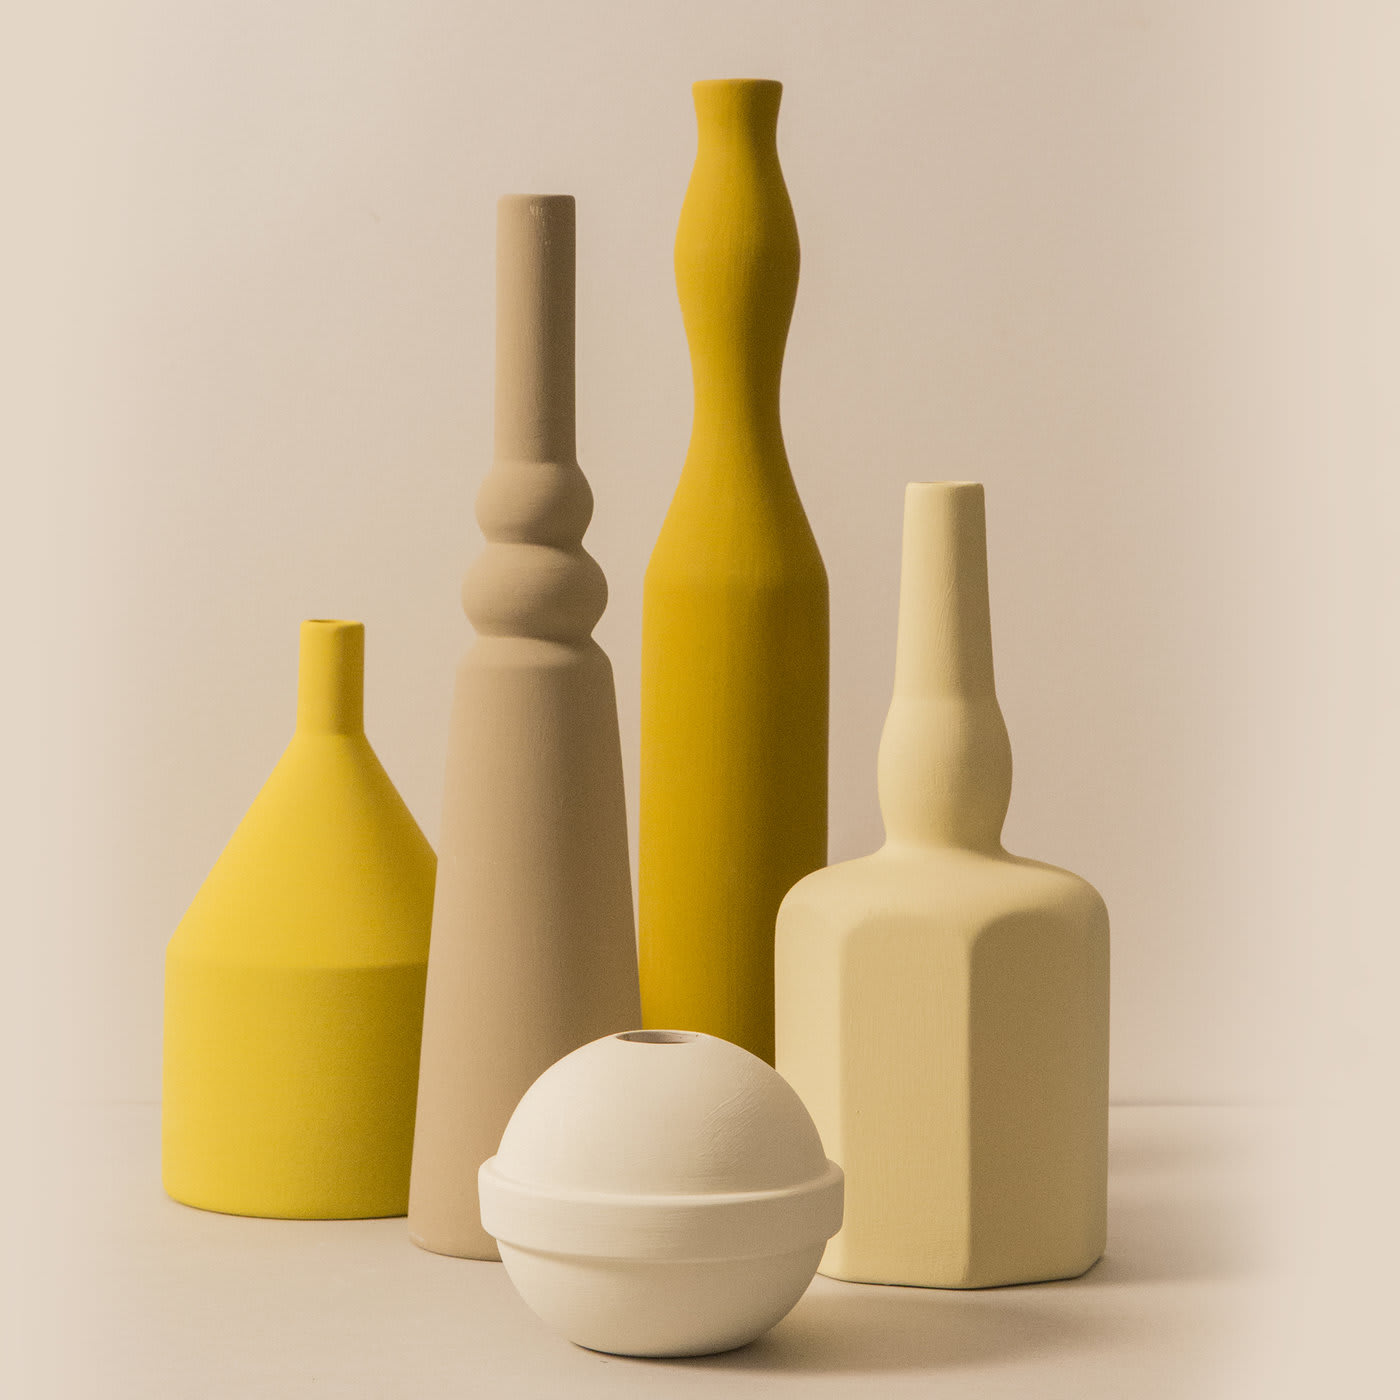 Ваза натура. Ваза с натуры. Керамическая ваза Morandi. Натюрморт с керамической посудой. Натюрморт с керамикой.